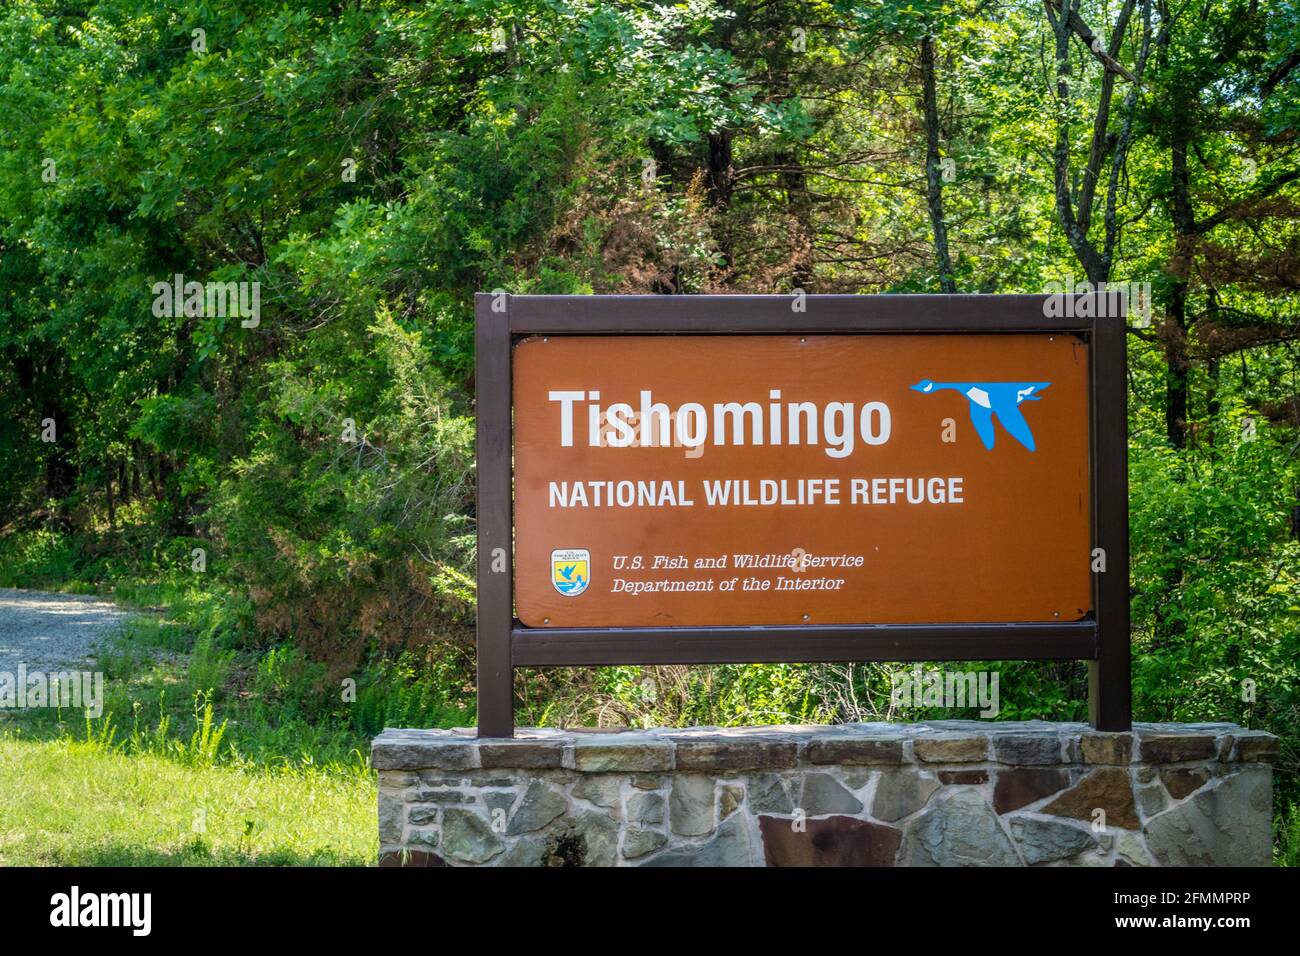 Tishomingo Wildlife Refuge, OK, USA - May 12, 2018: A welcoming signbo Stock Photo